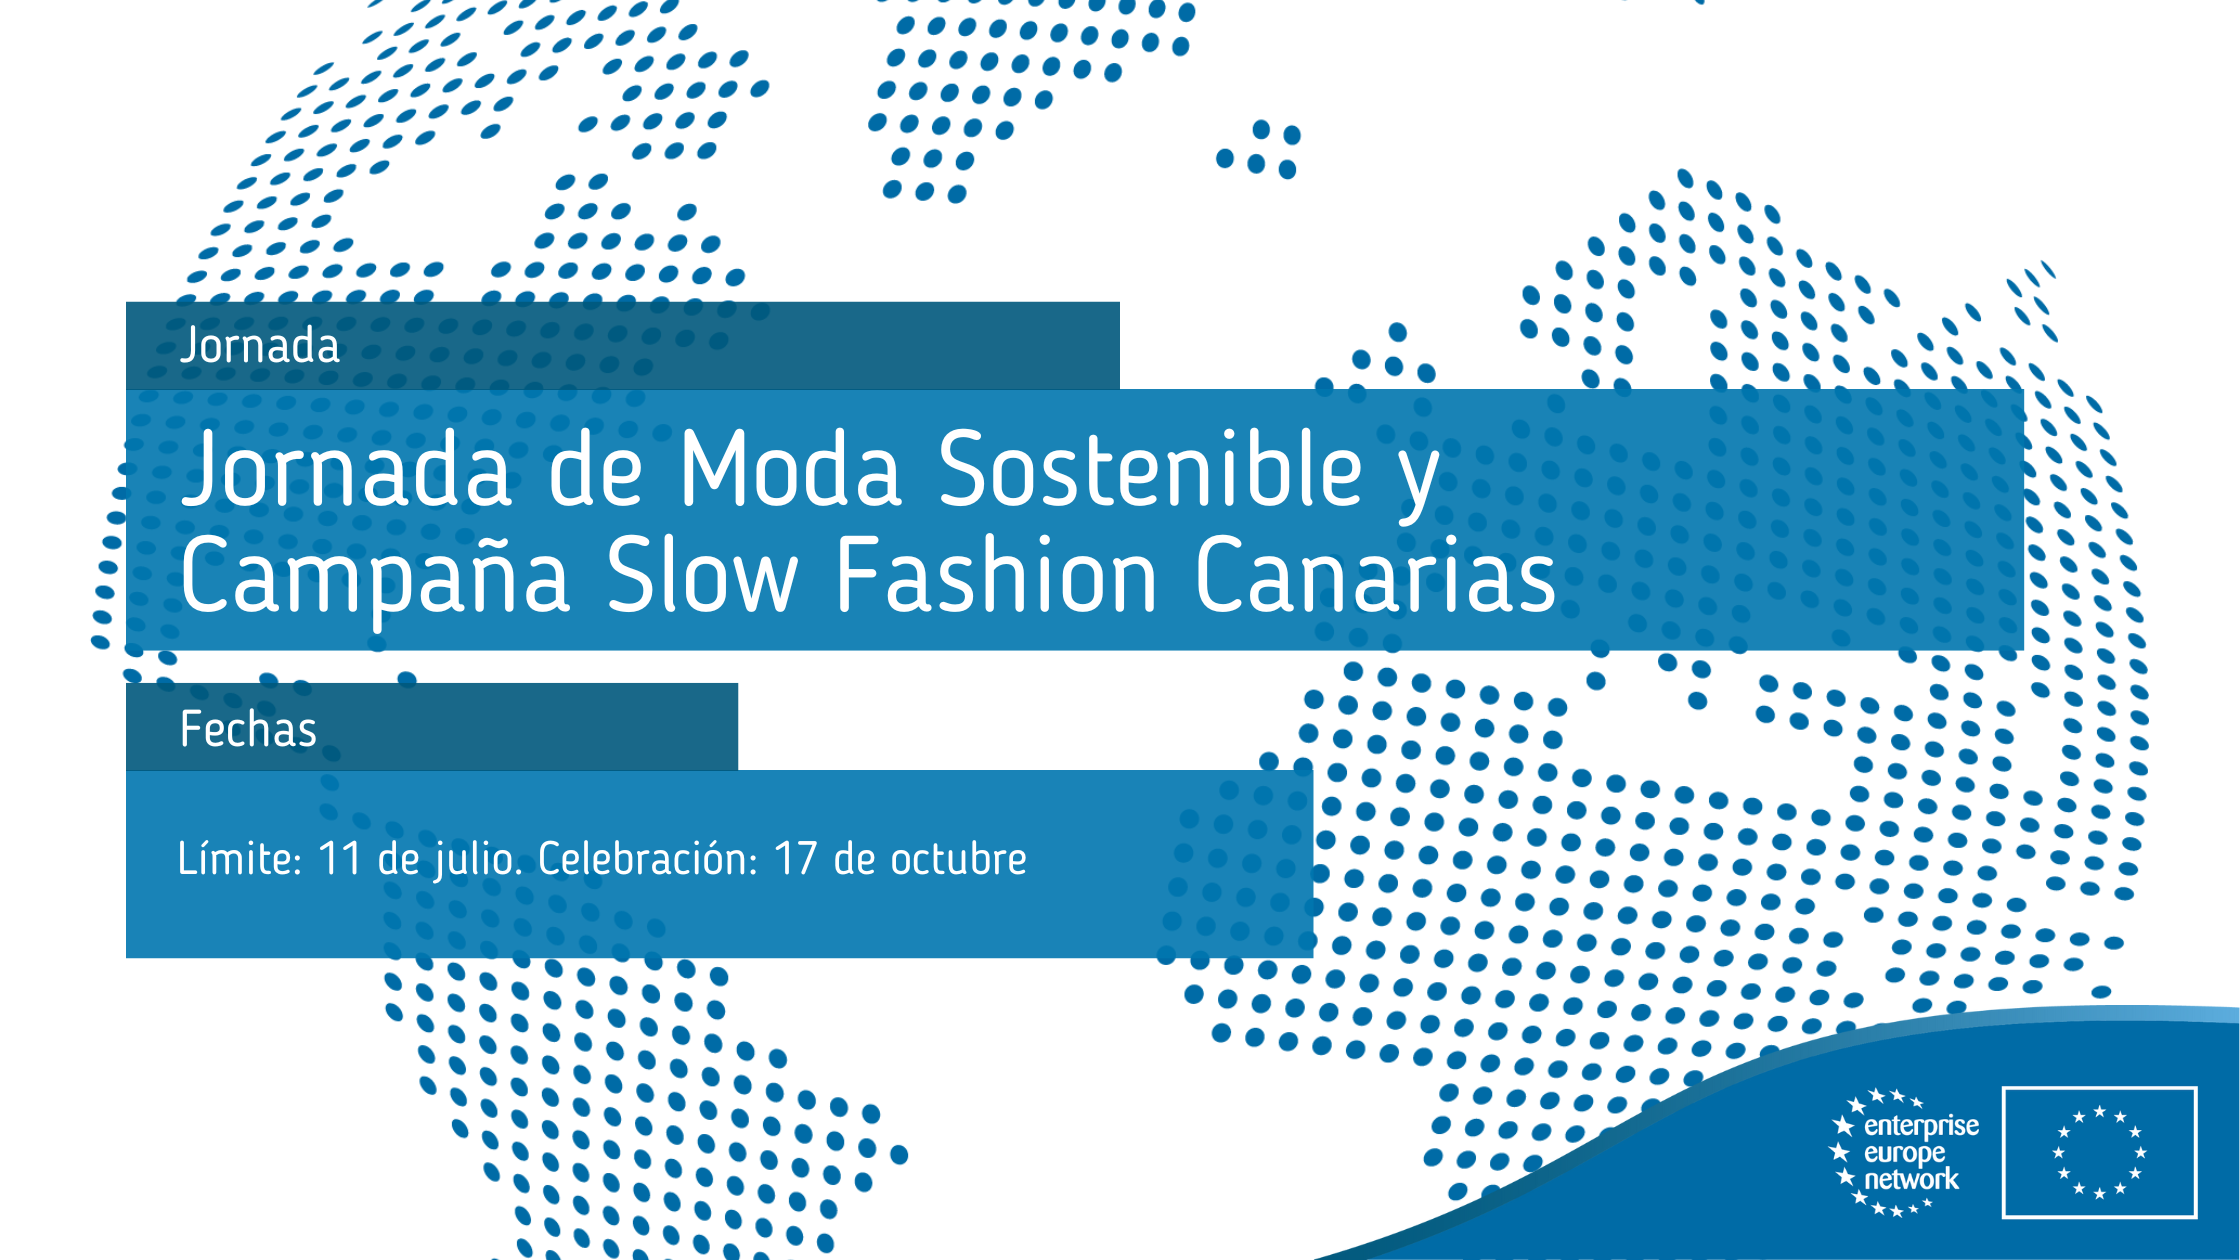 Jornada_de_Moda_Sostenible_y_Campaña_Slow_Fashion_Canarias